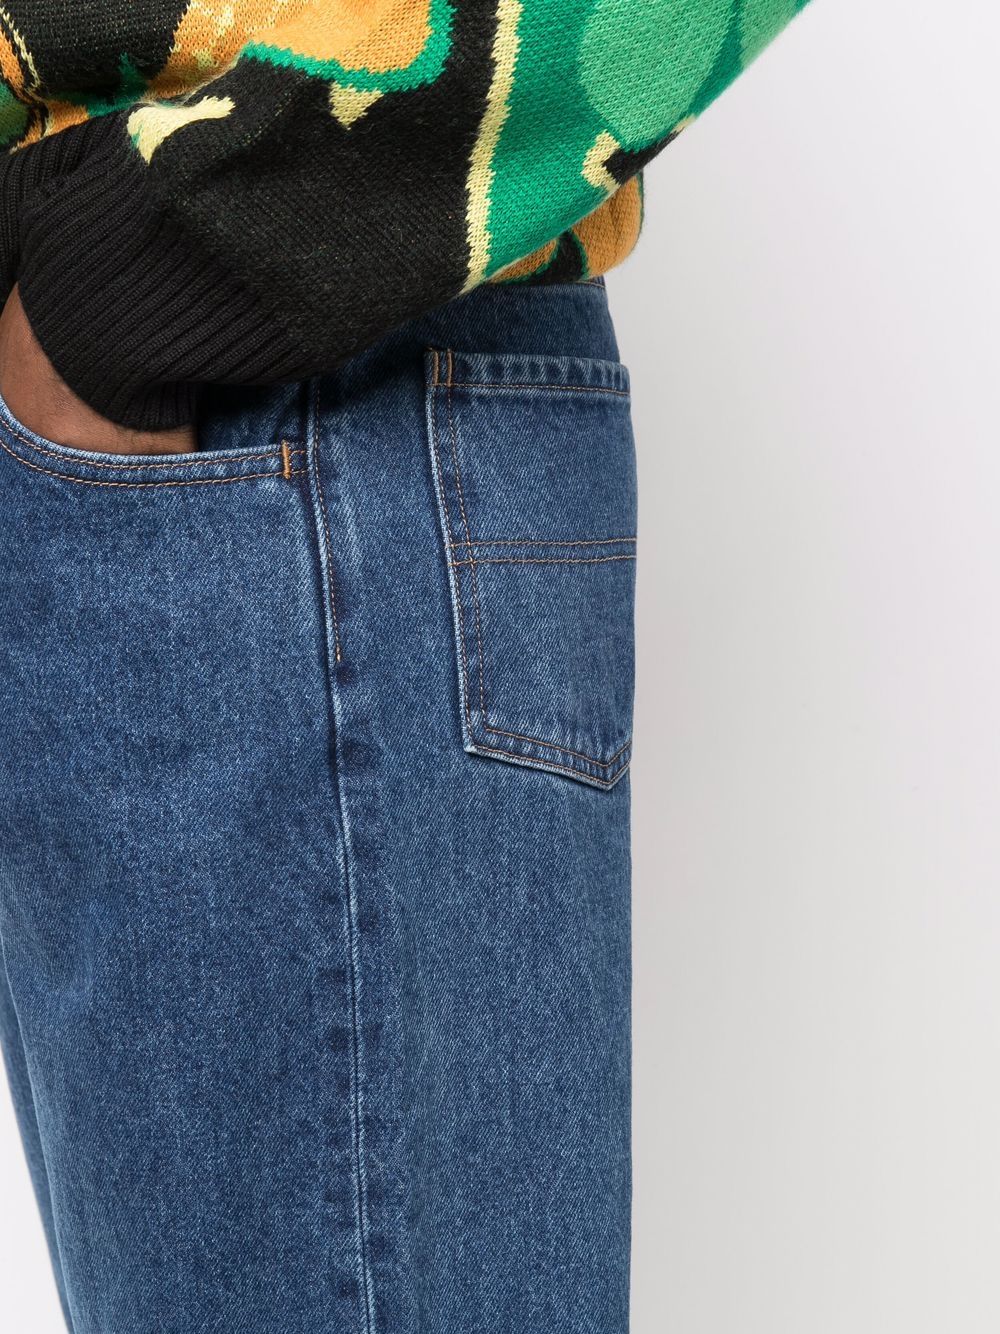 фото Perks and mini прямые джинсы с эффектом потертости